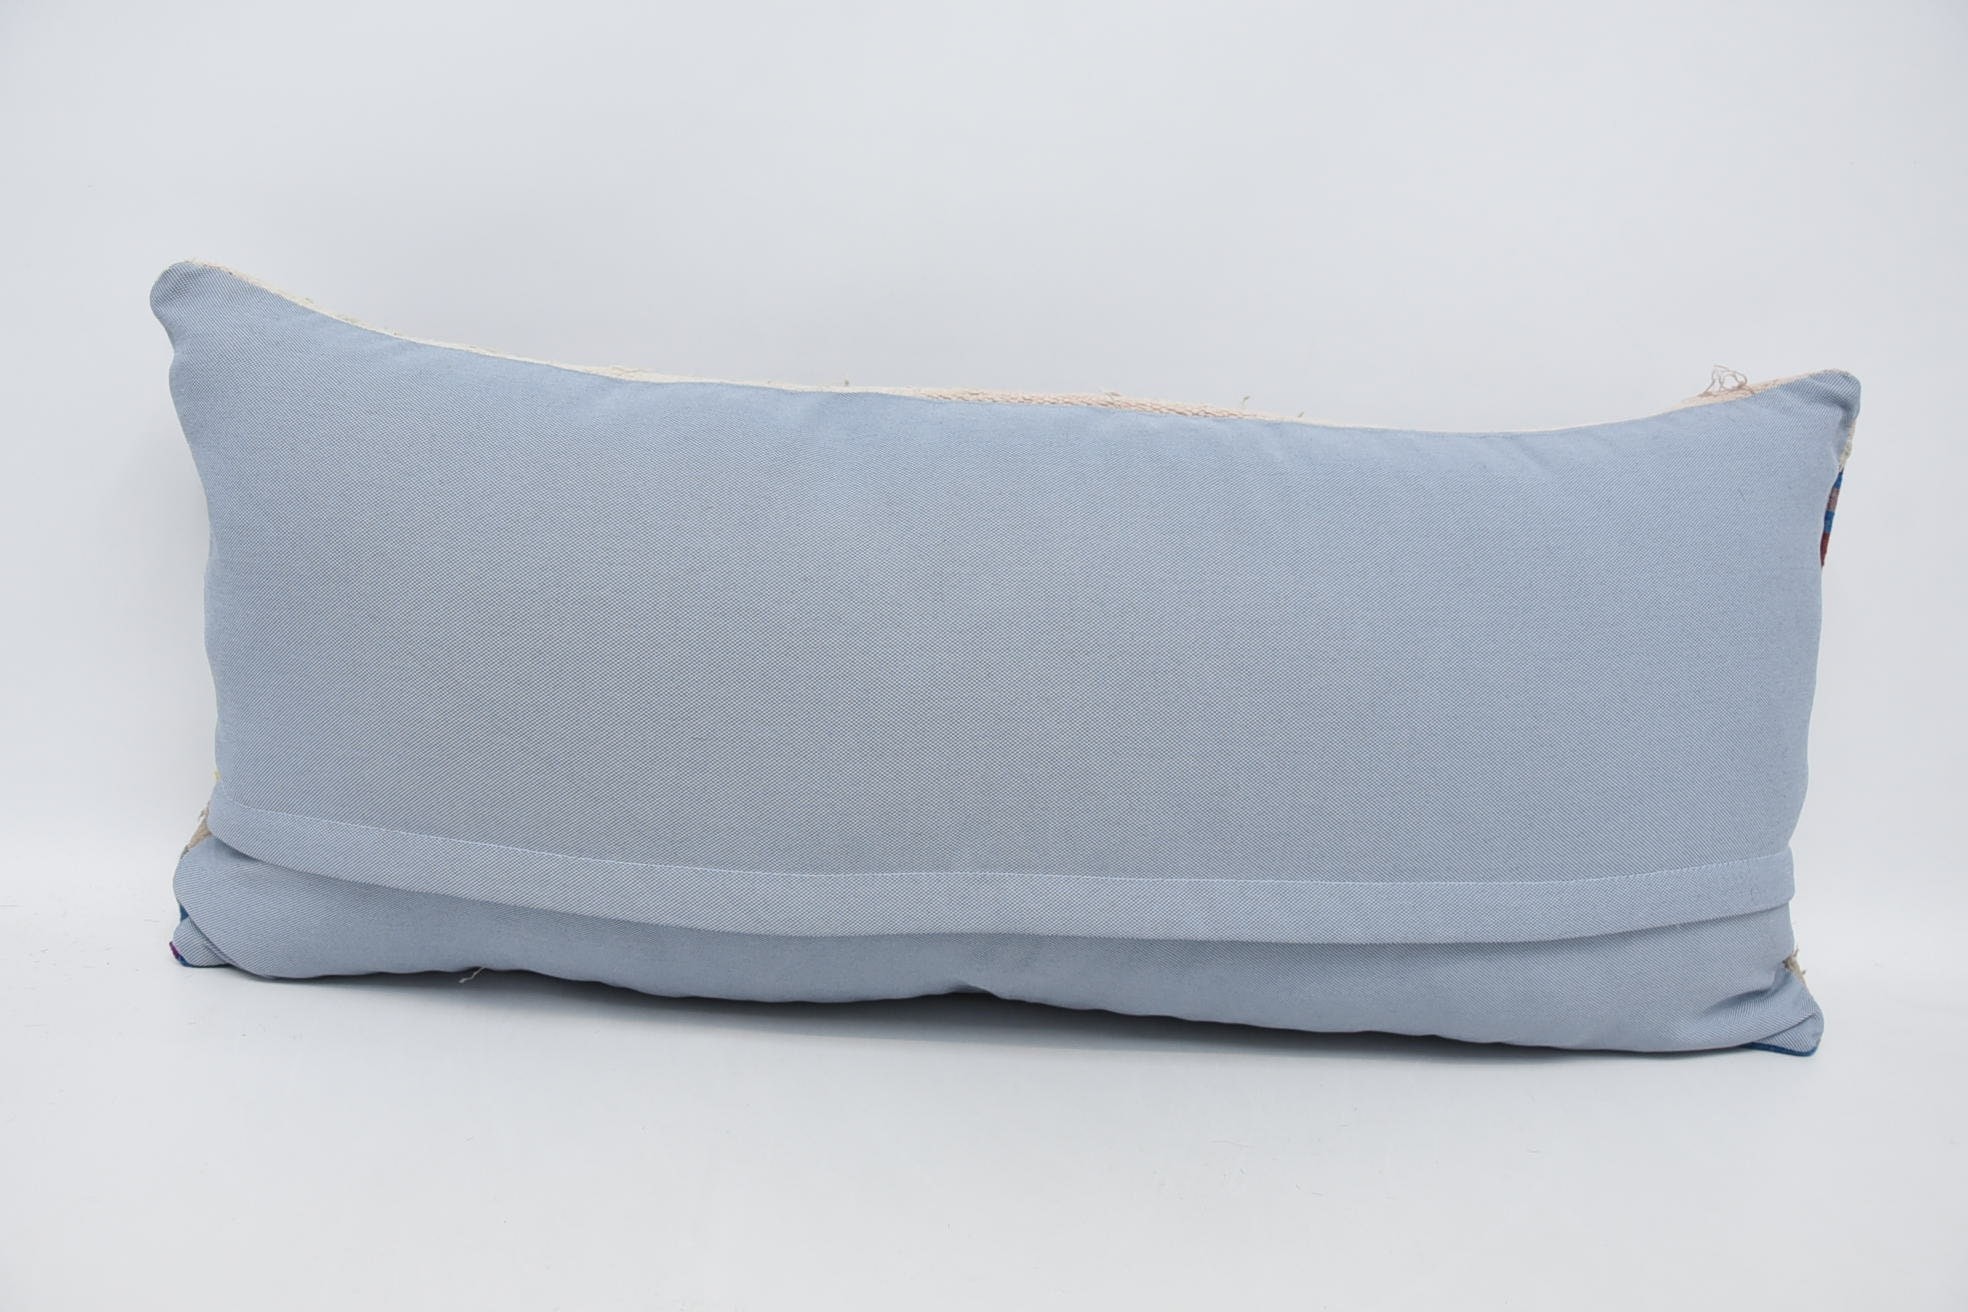 16"x36" Mavi Yastık, Özelleştirilmiş Yastık, Vintage Yastık, Kanepe Yastık, Vintage Kırlent Kılıfı, Sessiz Yastık, Kilim Yastık